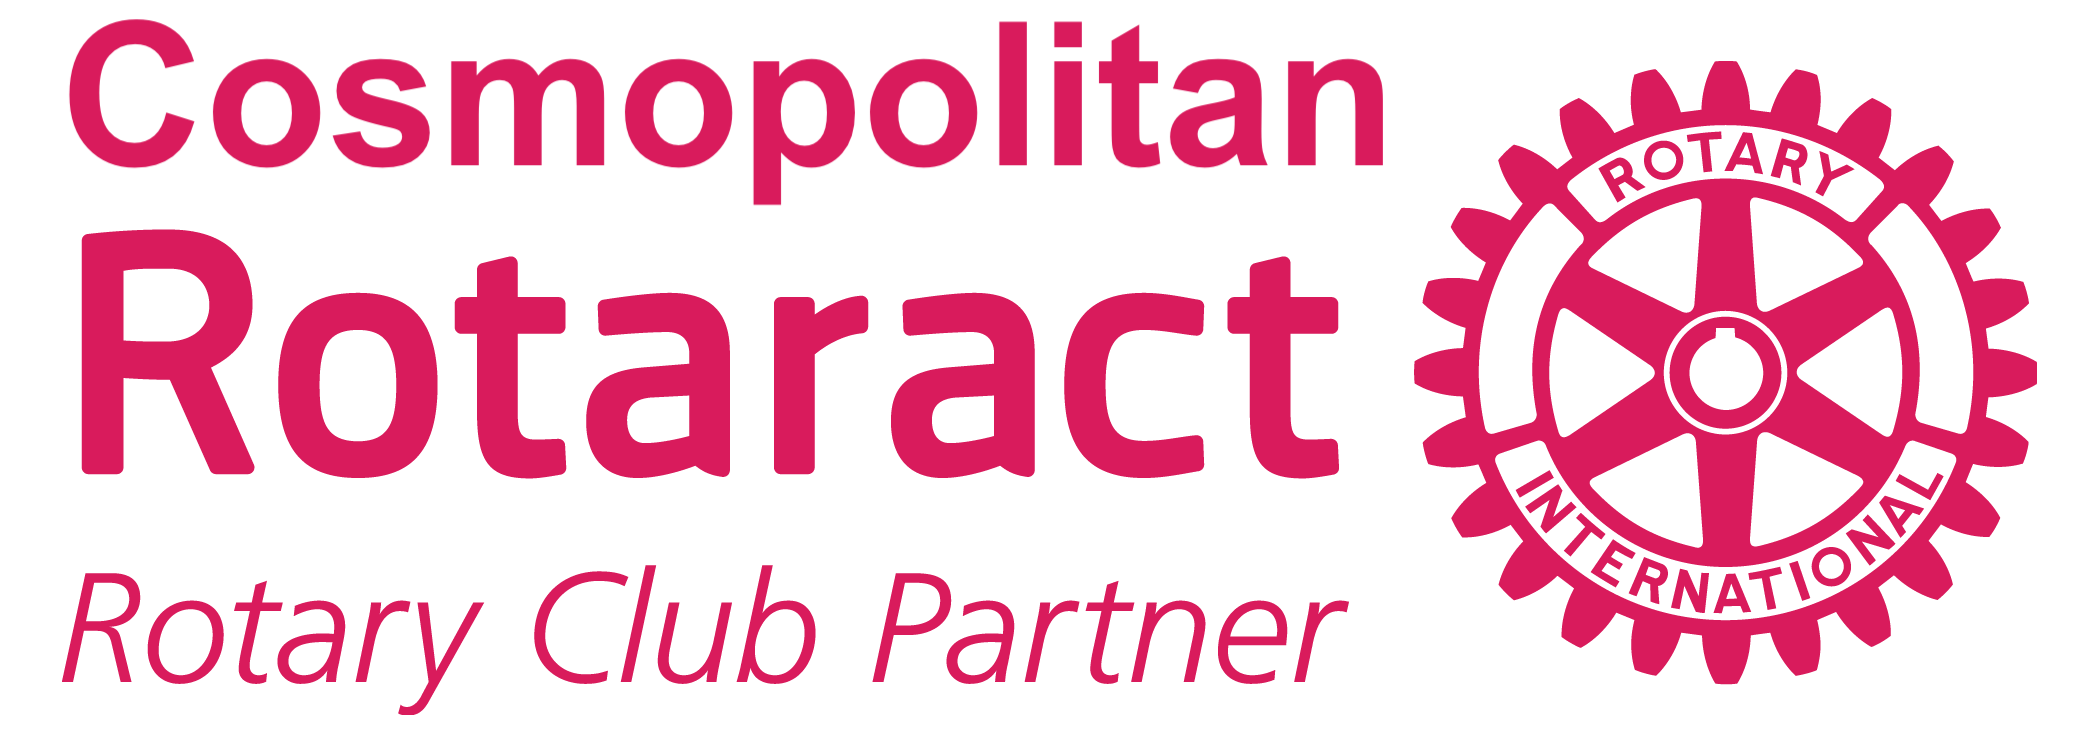 Cosmopolitan rotaract logo